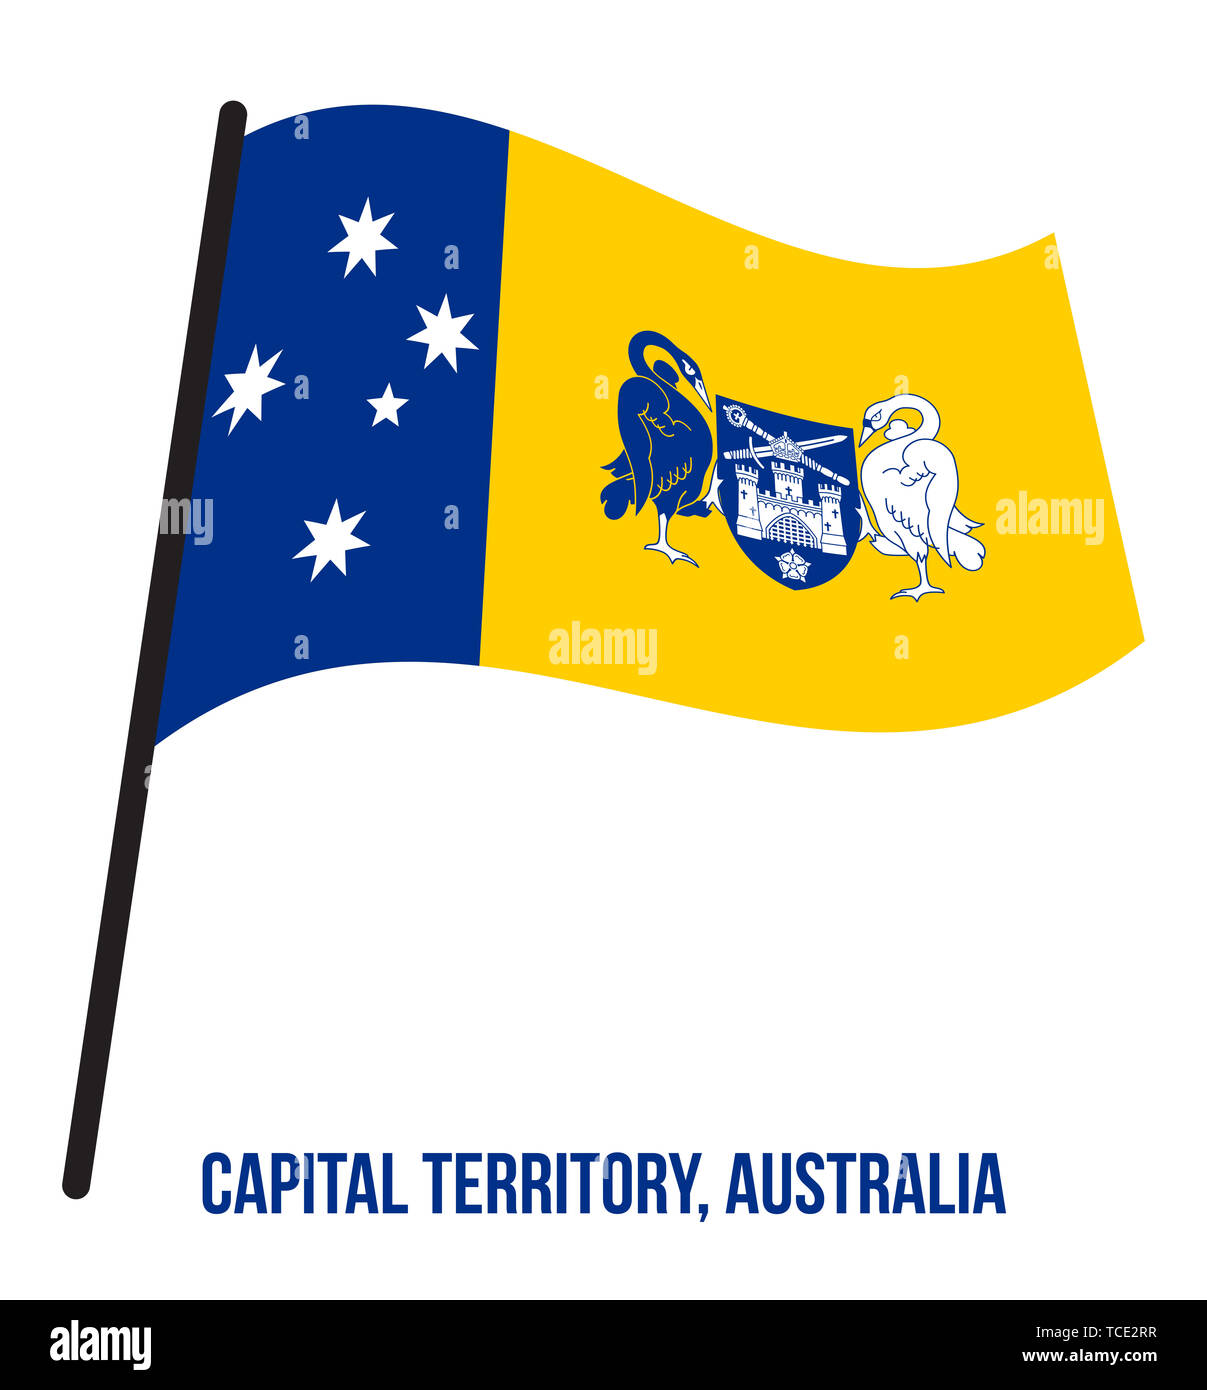 Territoire de la capitale australienne (ACT) Drapeaux Vector Illustration sur fond blanc. Drapeau du territoire de l'Australie. Banque D'Images